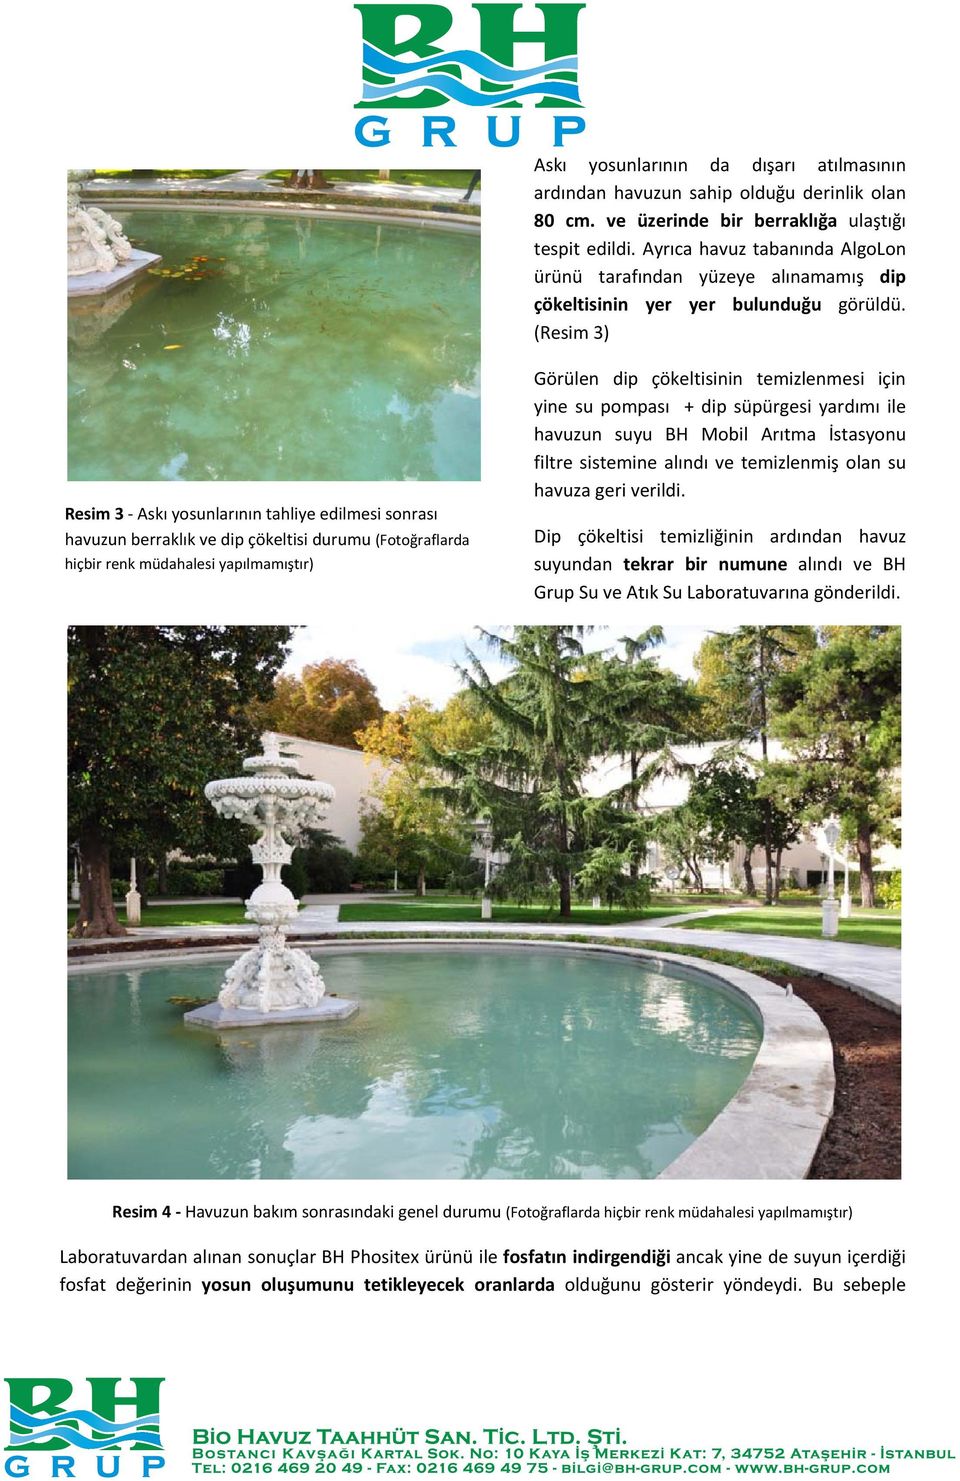 (Resim 3) Resim 3 Askı yosunlarının tahliye edilmesi sonrası havuzun berraklık ve dip çökeltisi durumu (Fotoğraflarda hiçbir renk müdahalesi yapılmamıştır) Görülen dip çökeltisinin temizlenmesi için